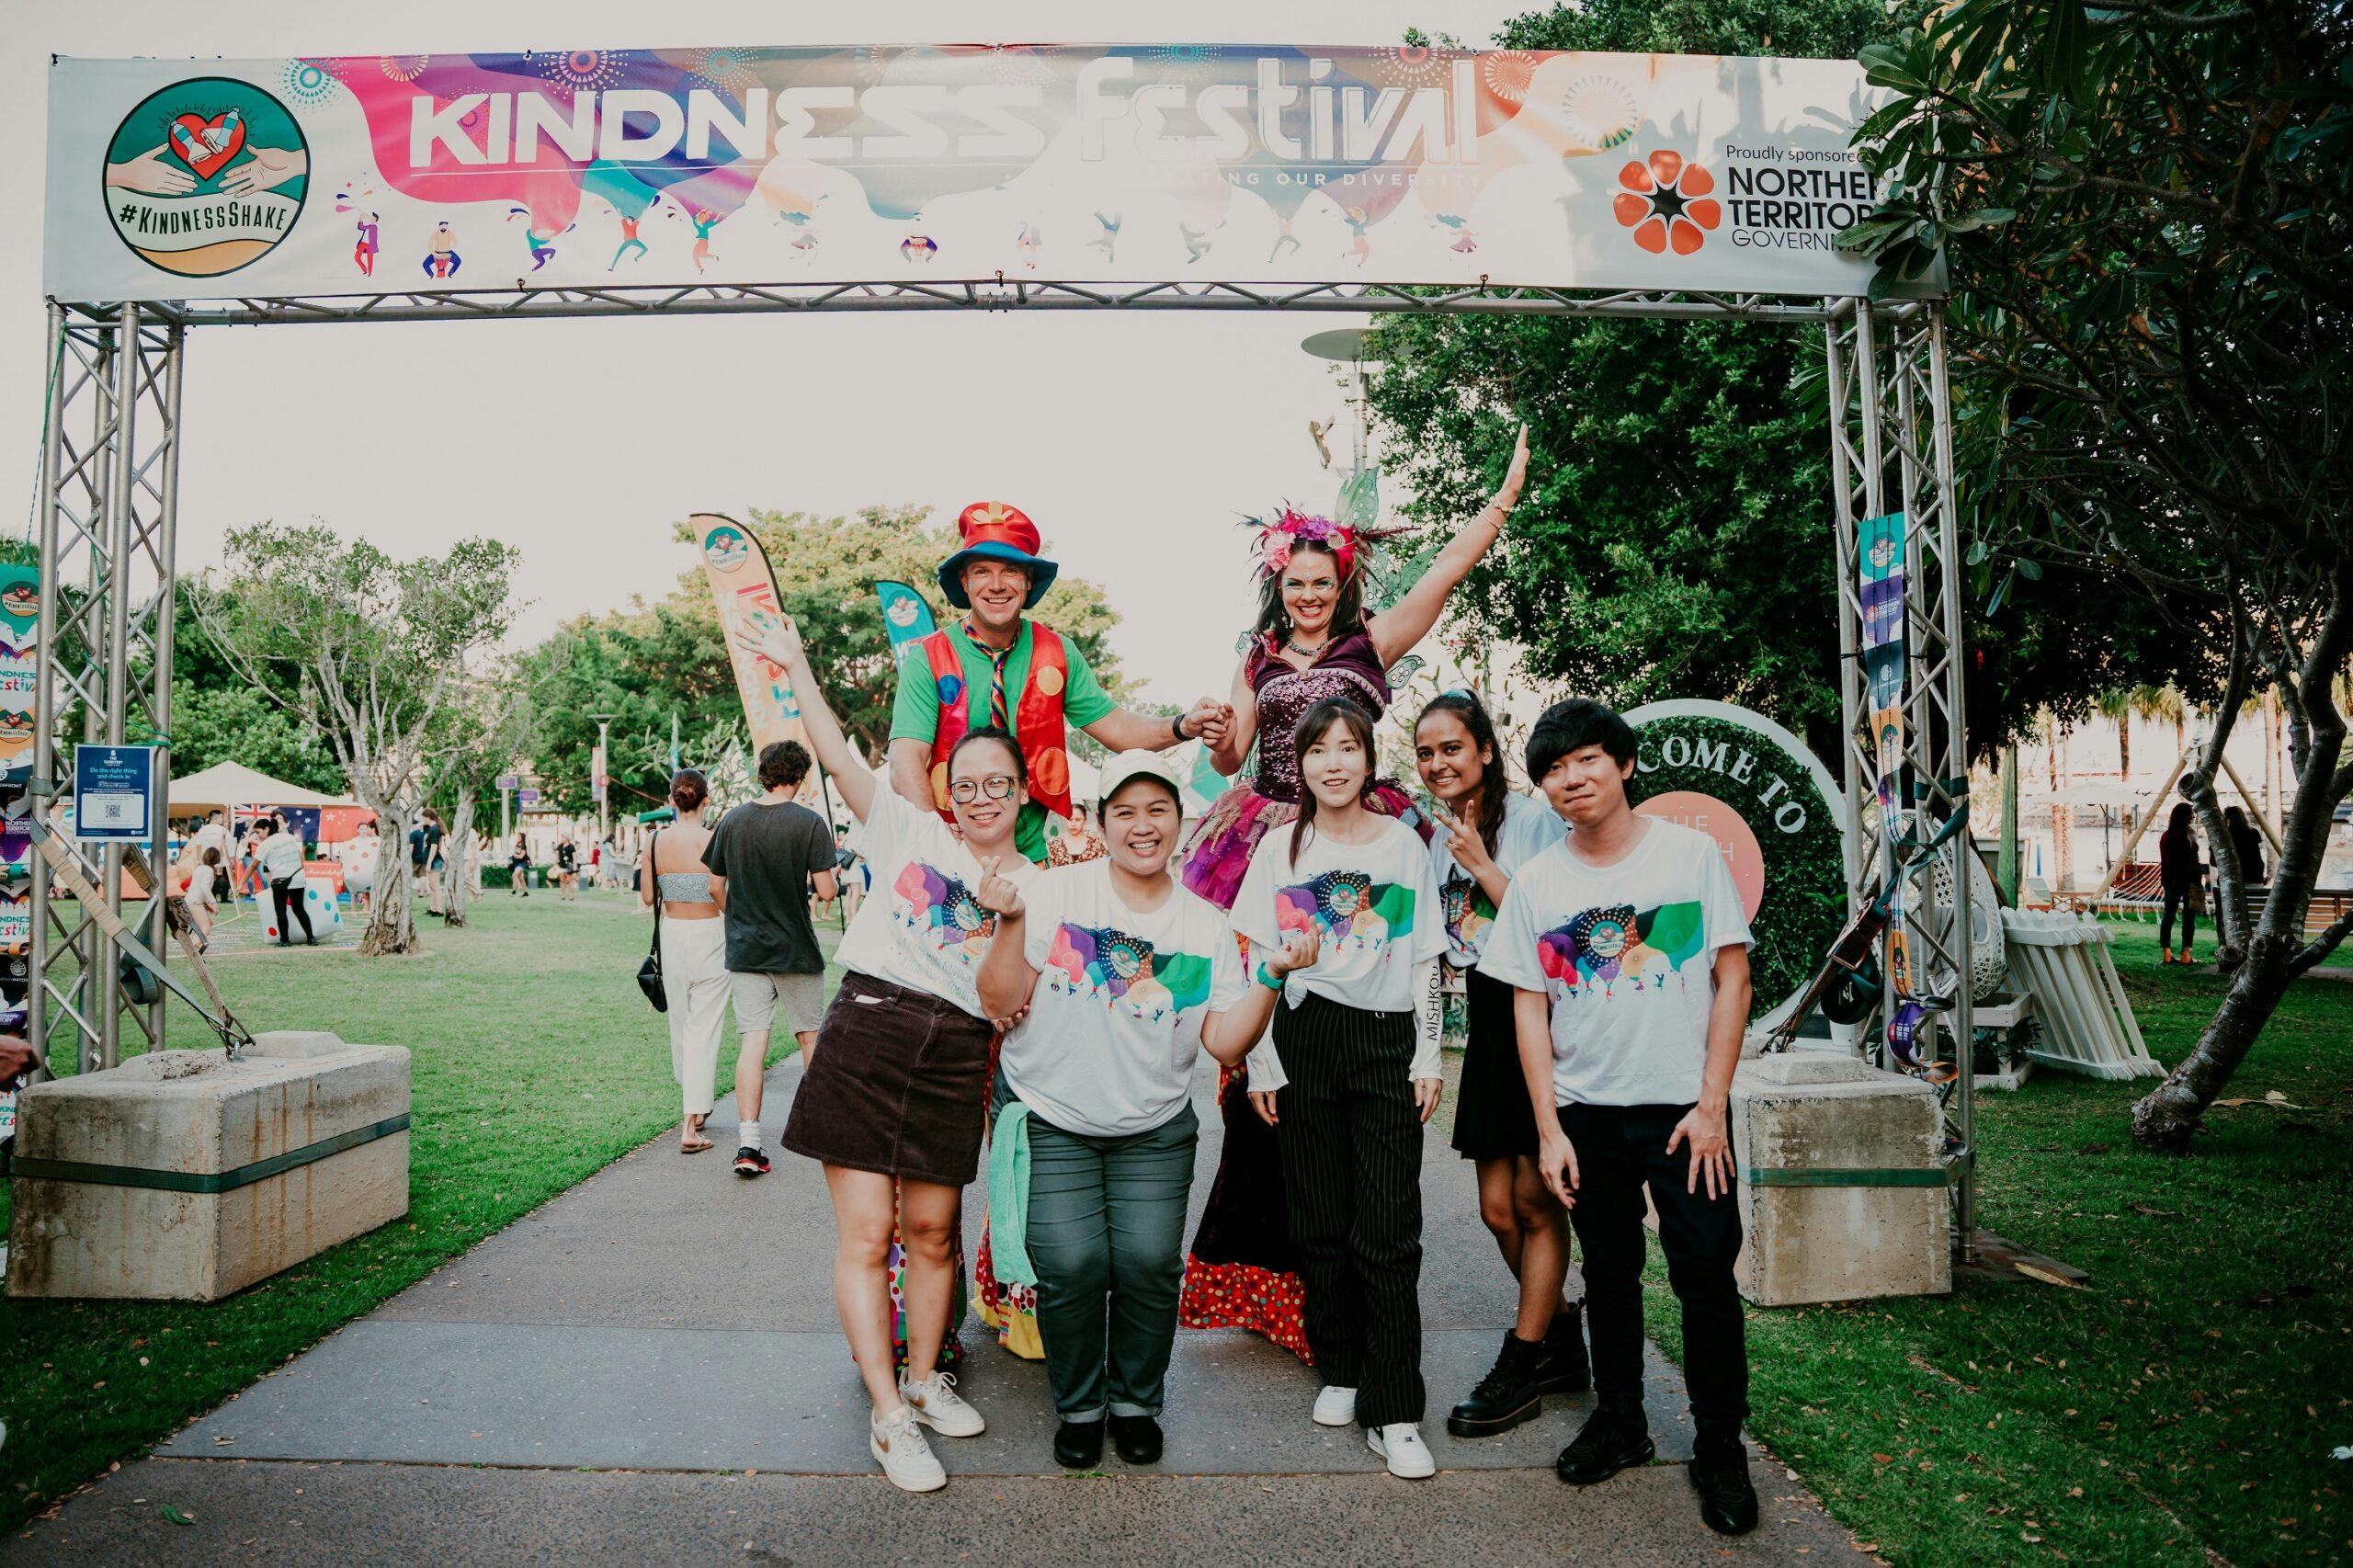 Kindness Festival image 2022